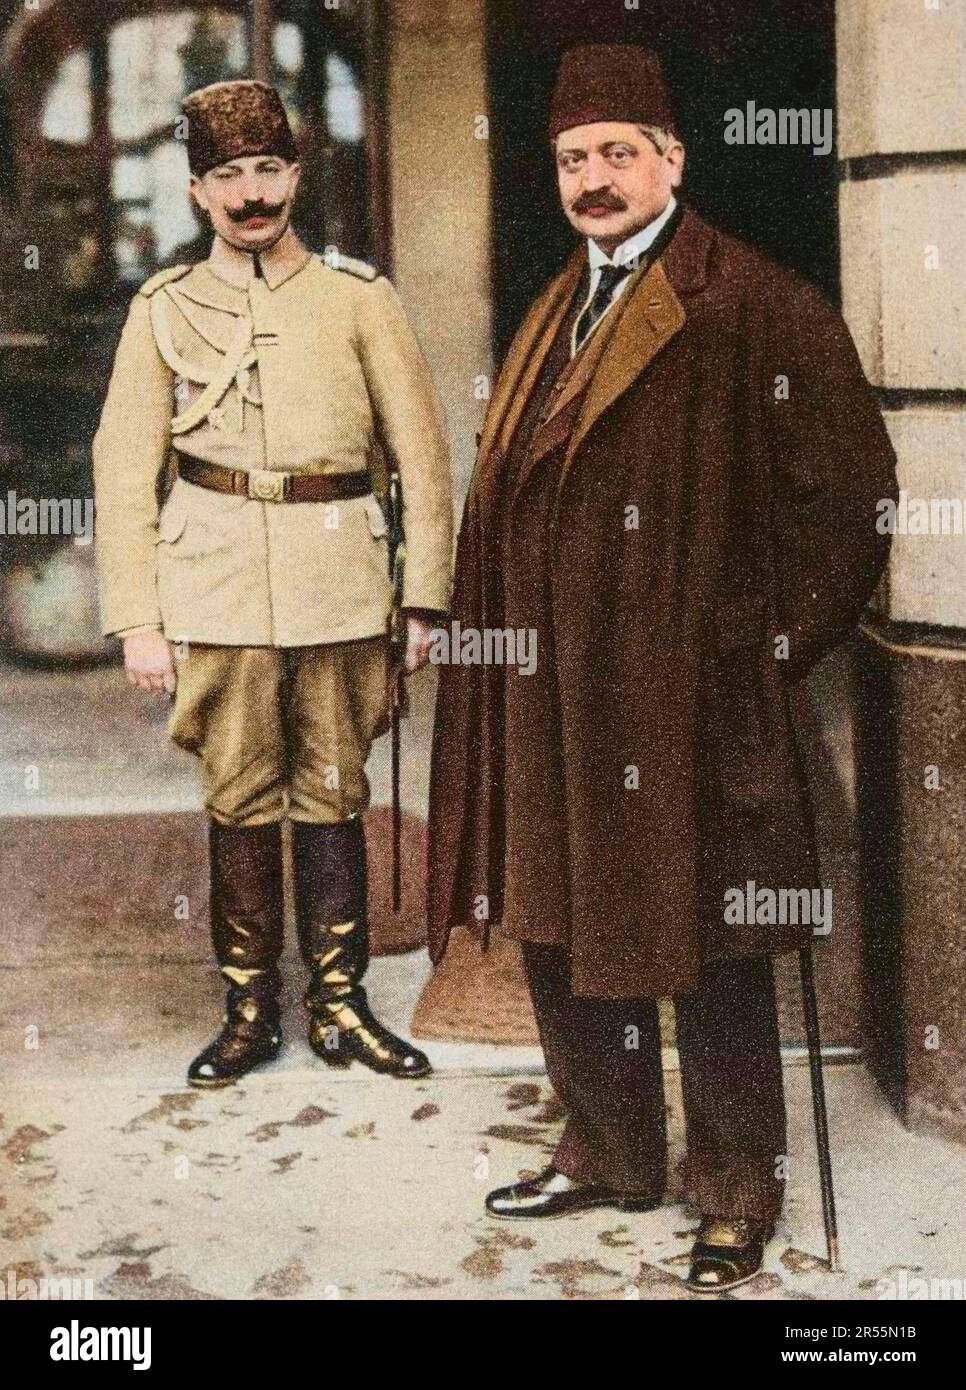 Le Grand Vizir ottoman Mehmet Talaat Pacha (1872-1921) avec figlio aide de camp à Berlino. Allemagne - Mehmet Talaat Pacha (1872-1921) ministre de l'interieur turc Foto Stock